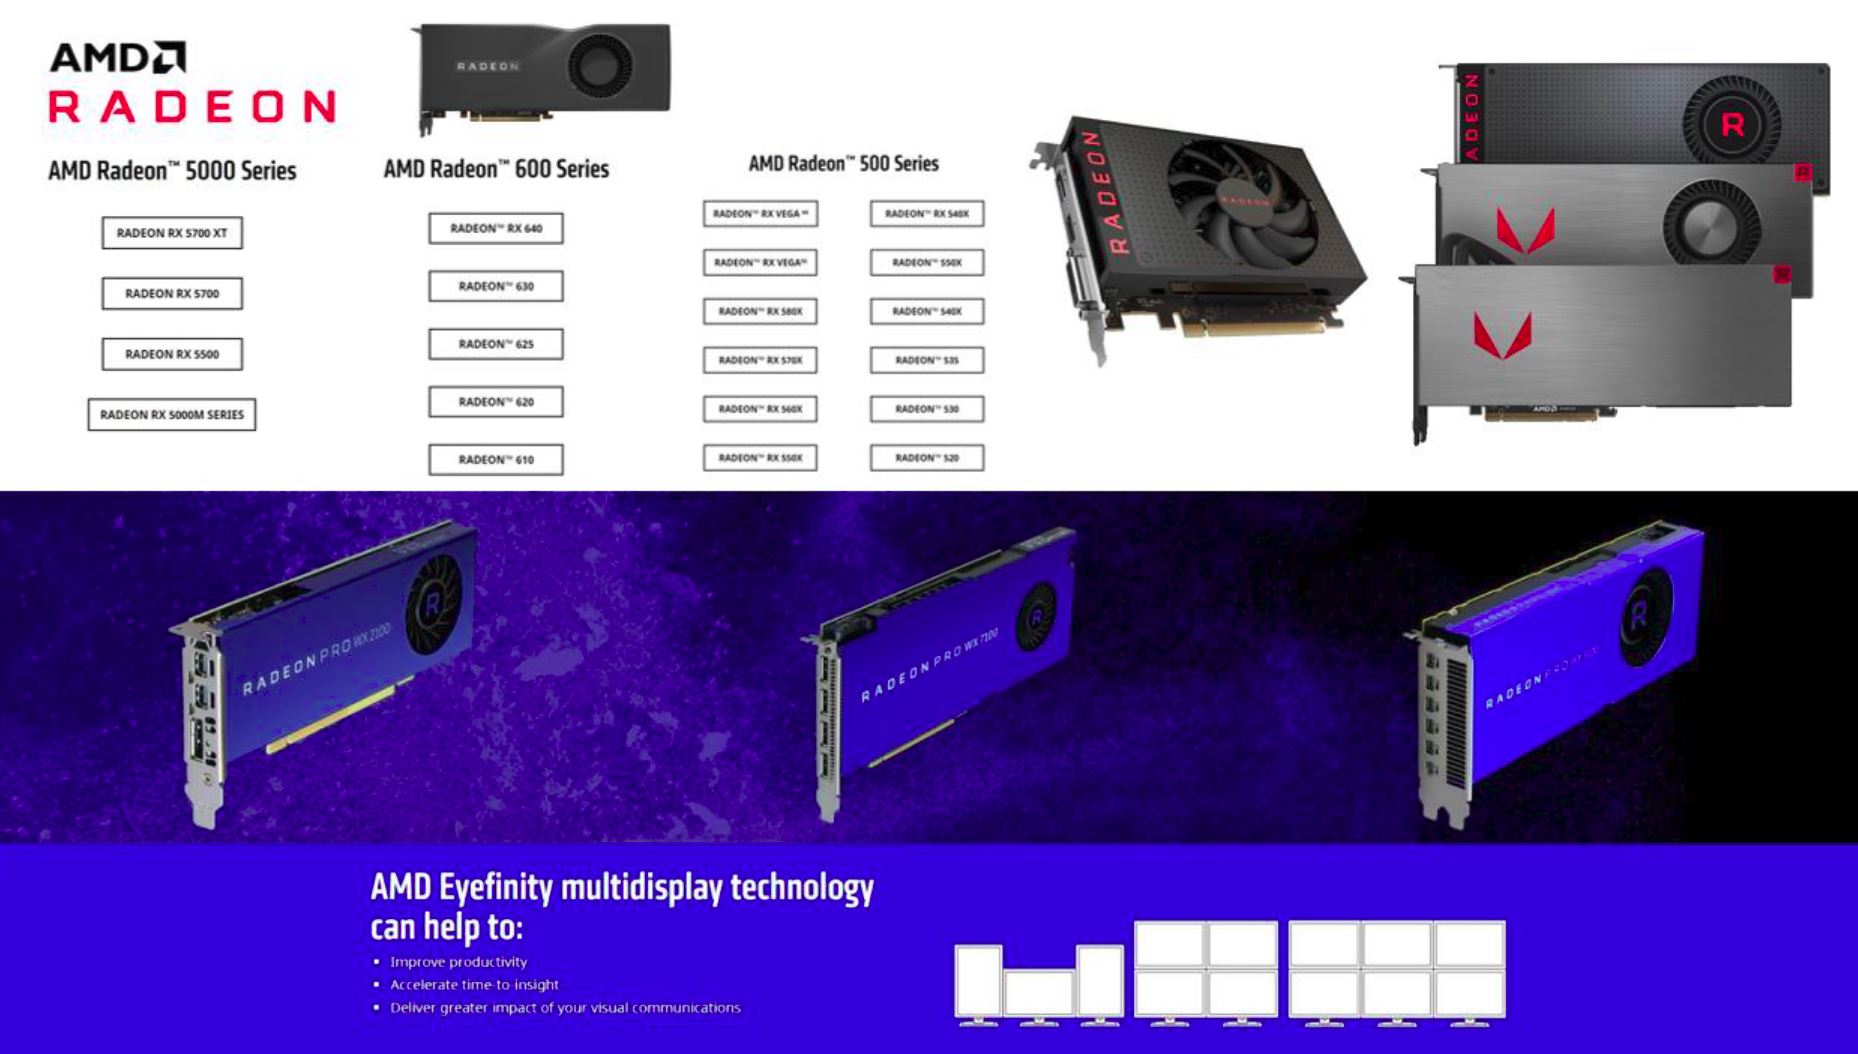 AMD RADEON GPU GRAPHIC CARD MALAYSIA